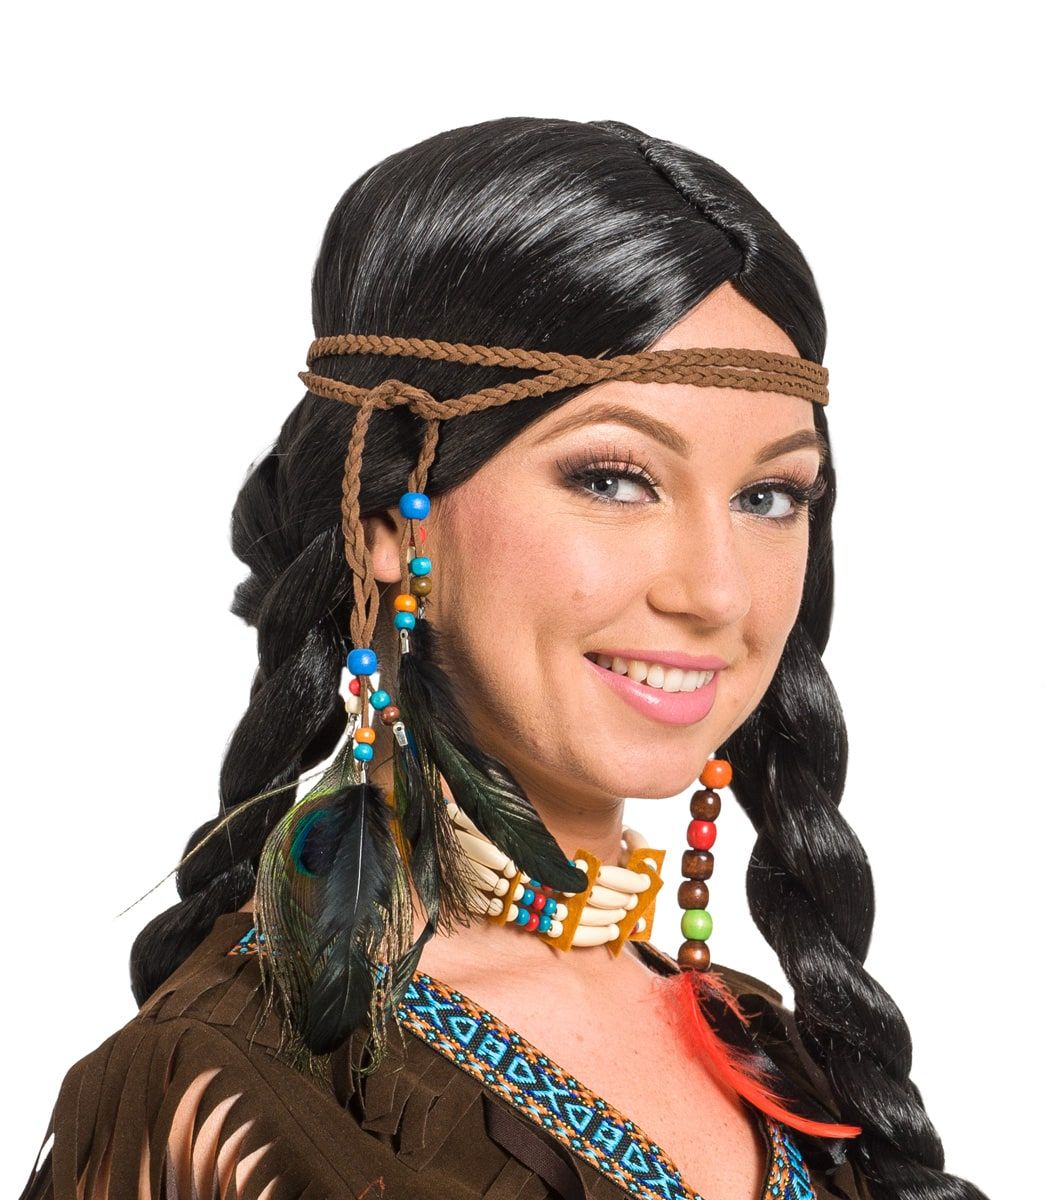 Indianen veren haarband met kralen